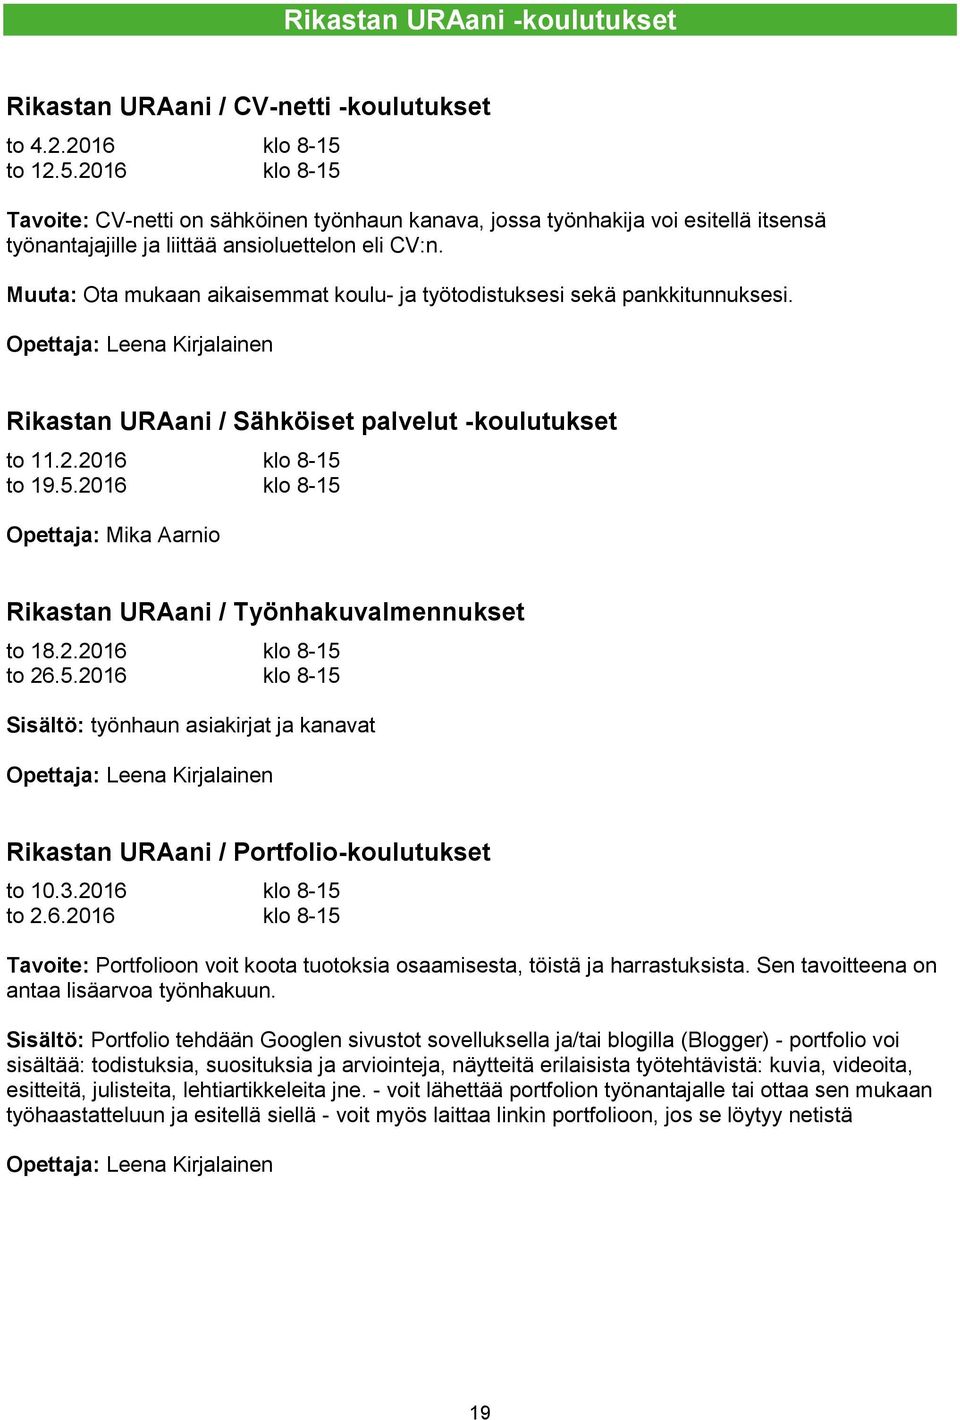 Muuta: Ota mukaan aikaisemmat koulu- ja työtodistuksesi sekä pankkitunnuksesi. Opettaja: Leena Kirjalainen Rikastan URAani / Sähköiset palvelut -koulutukset to 11.2.2016 klo 8-15 